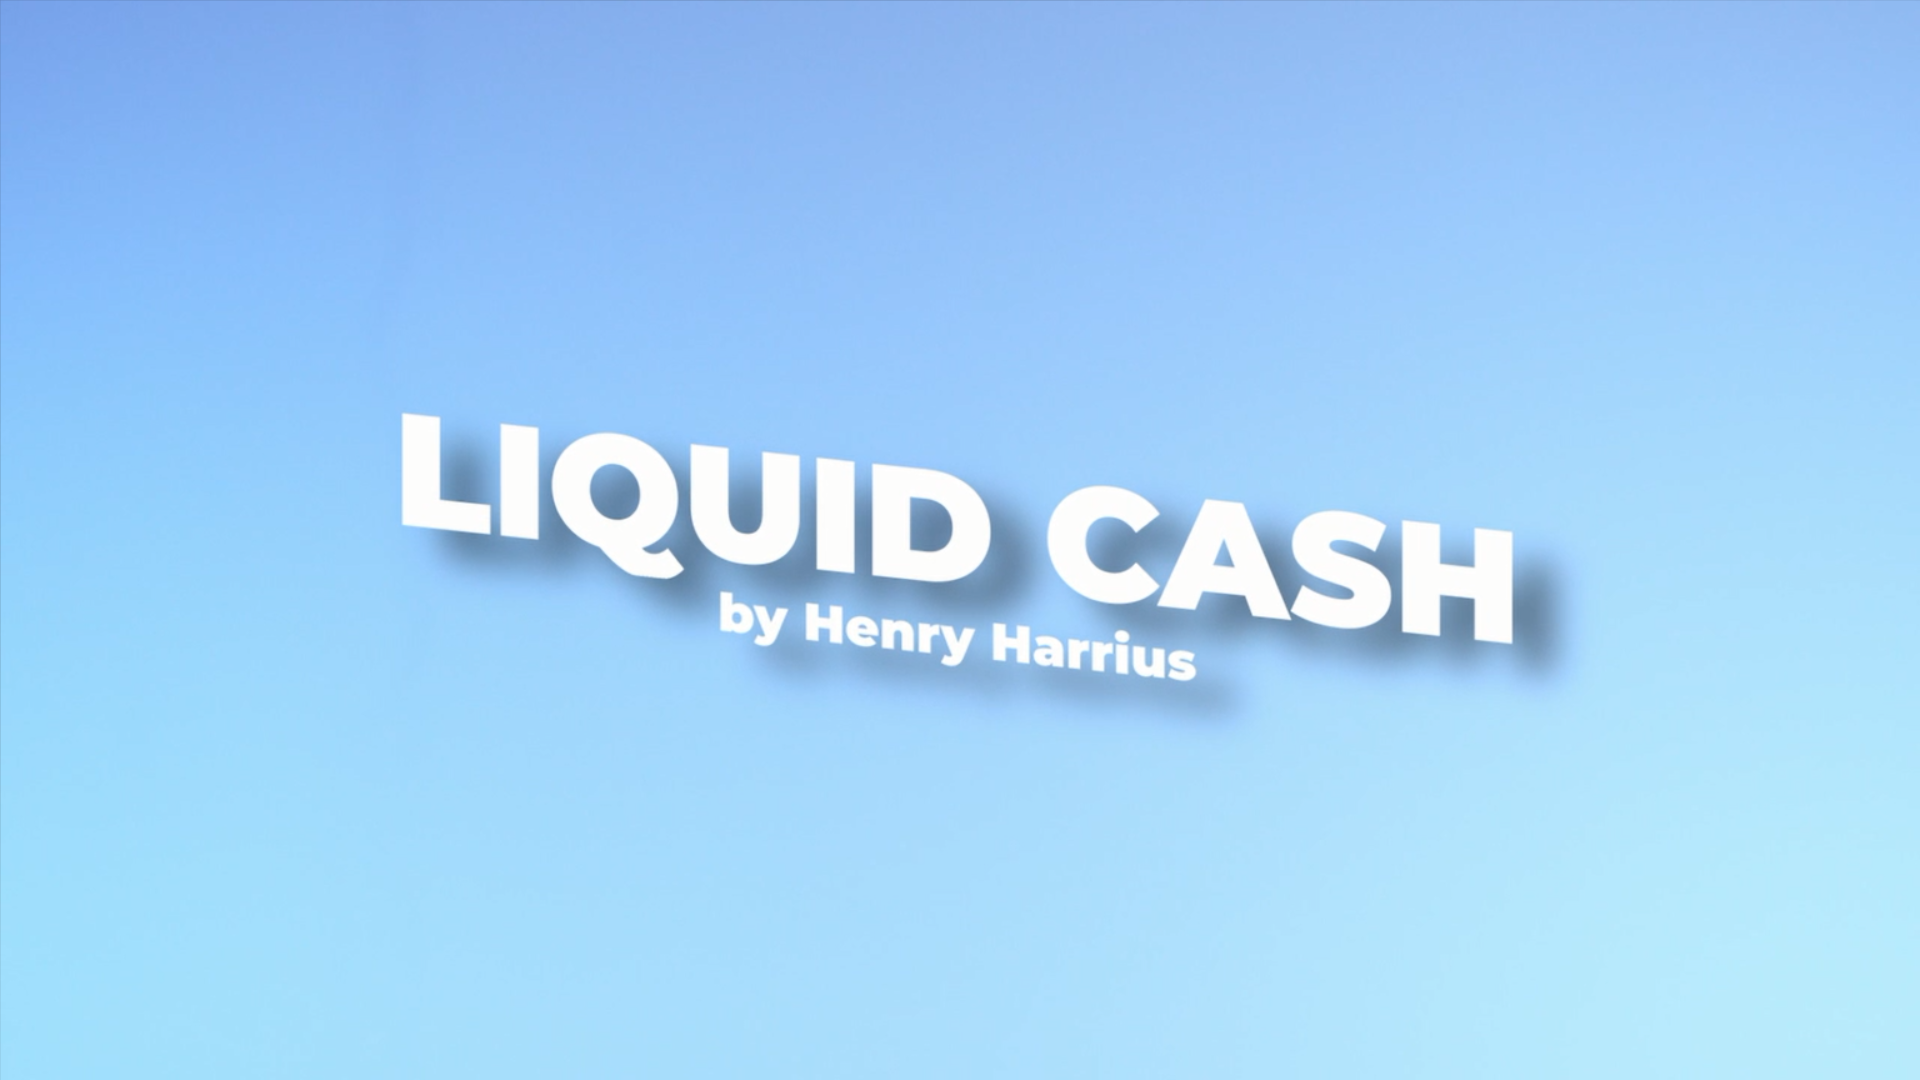 Liquid Cash by Henry Harrius – Henry Harrius Presents